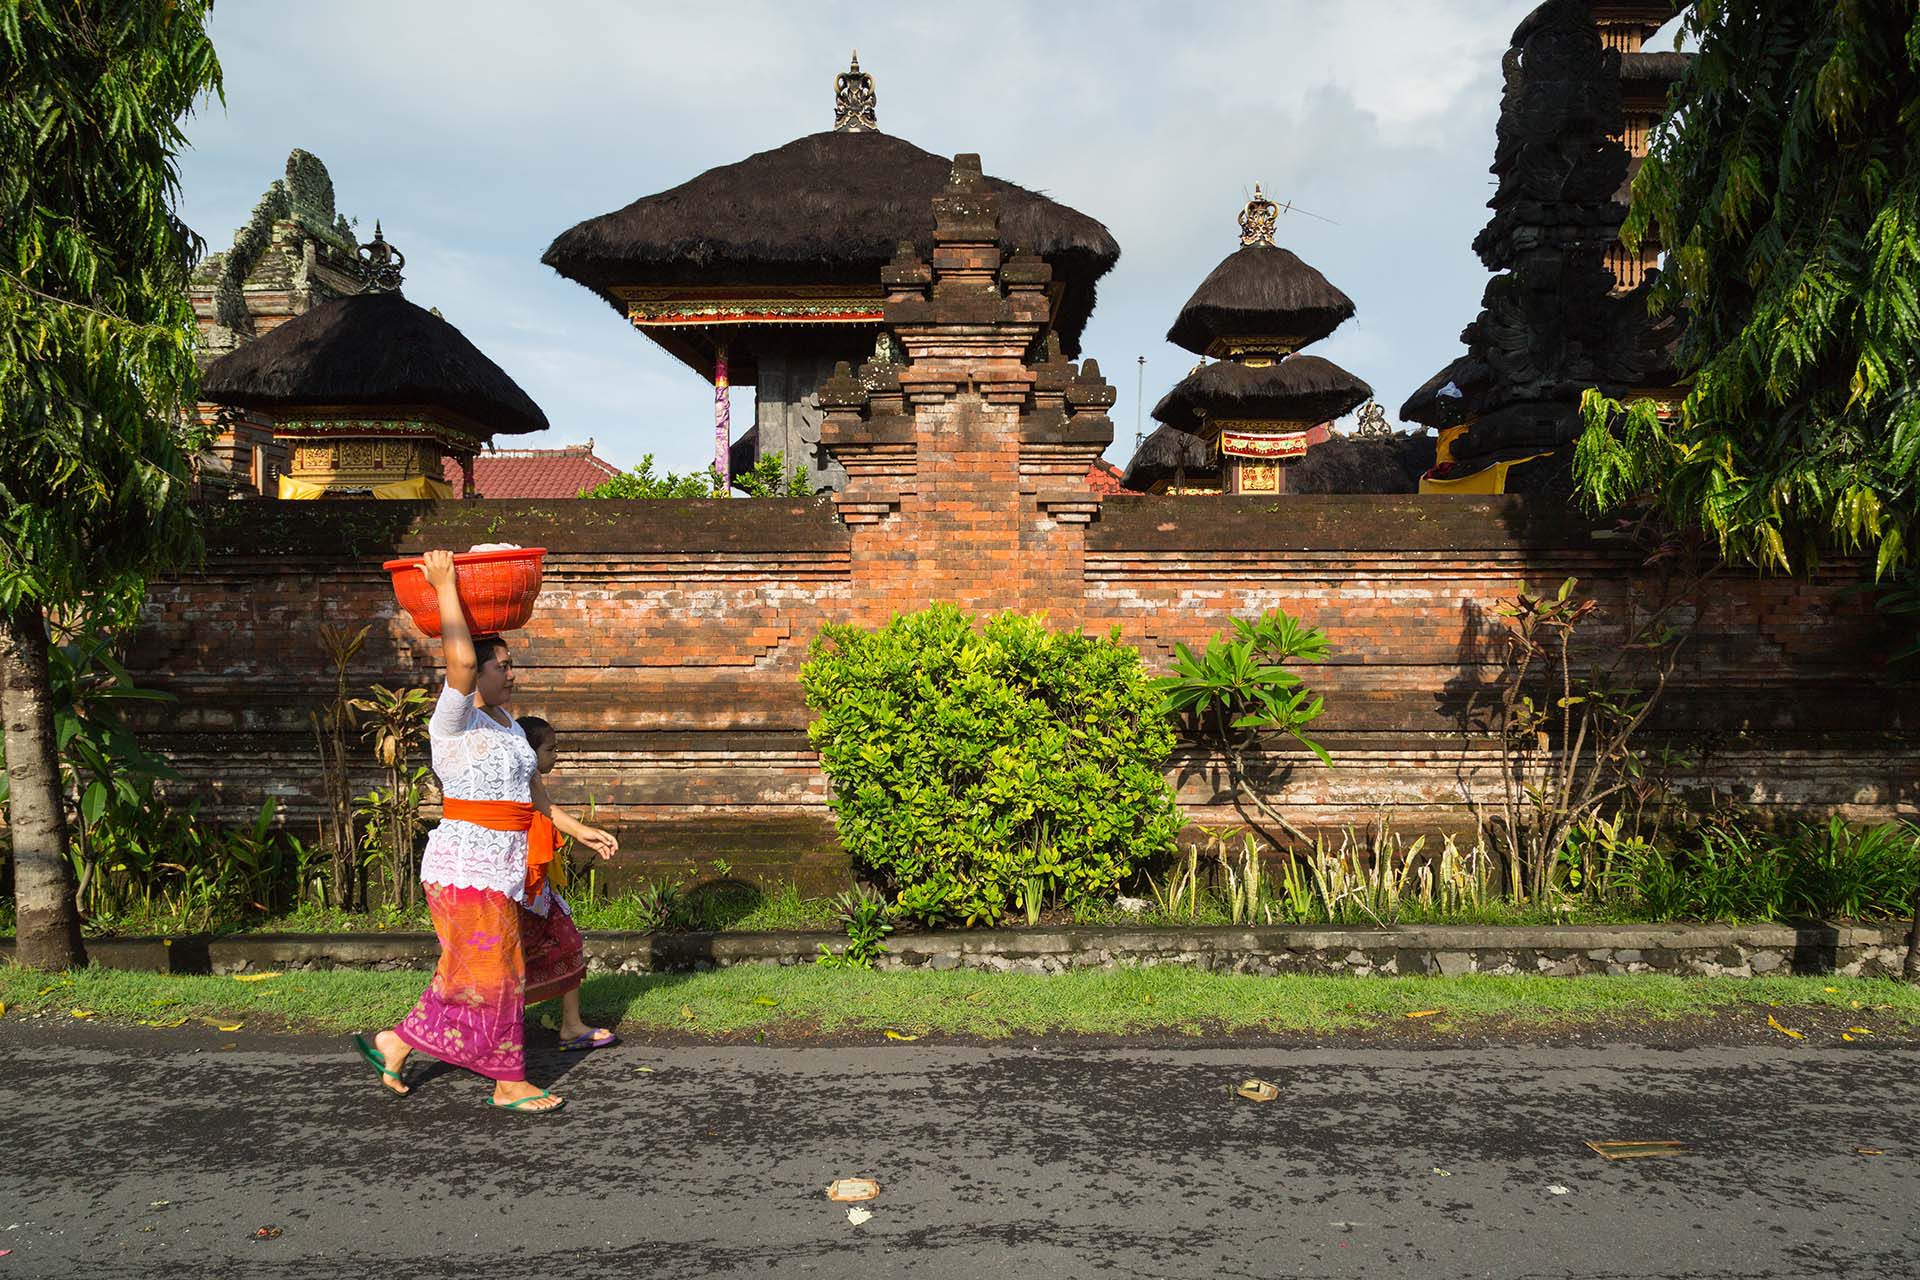 Las vistas del campo de arroz y las arenas volcánicas de Canggu ya no son un secreto, pero la ciudad balinesa tranquila es mucho menos conocida que algunos de los centros turísticos más populares de Bali como Kuta, Seminyak y Ubud